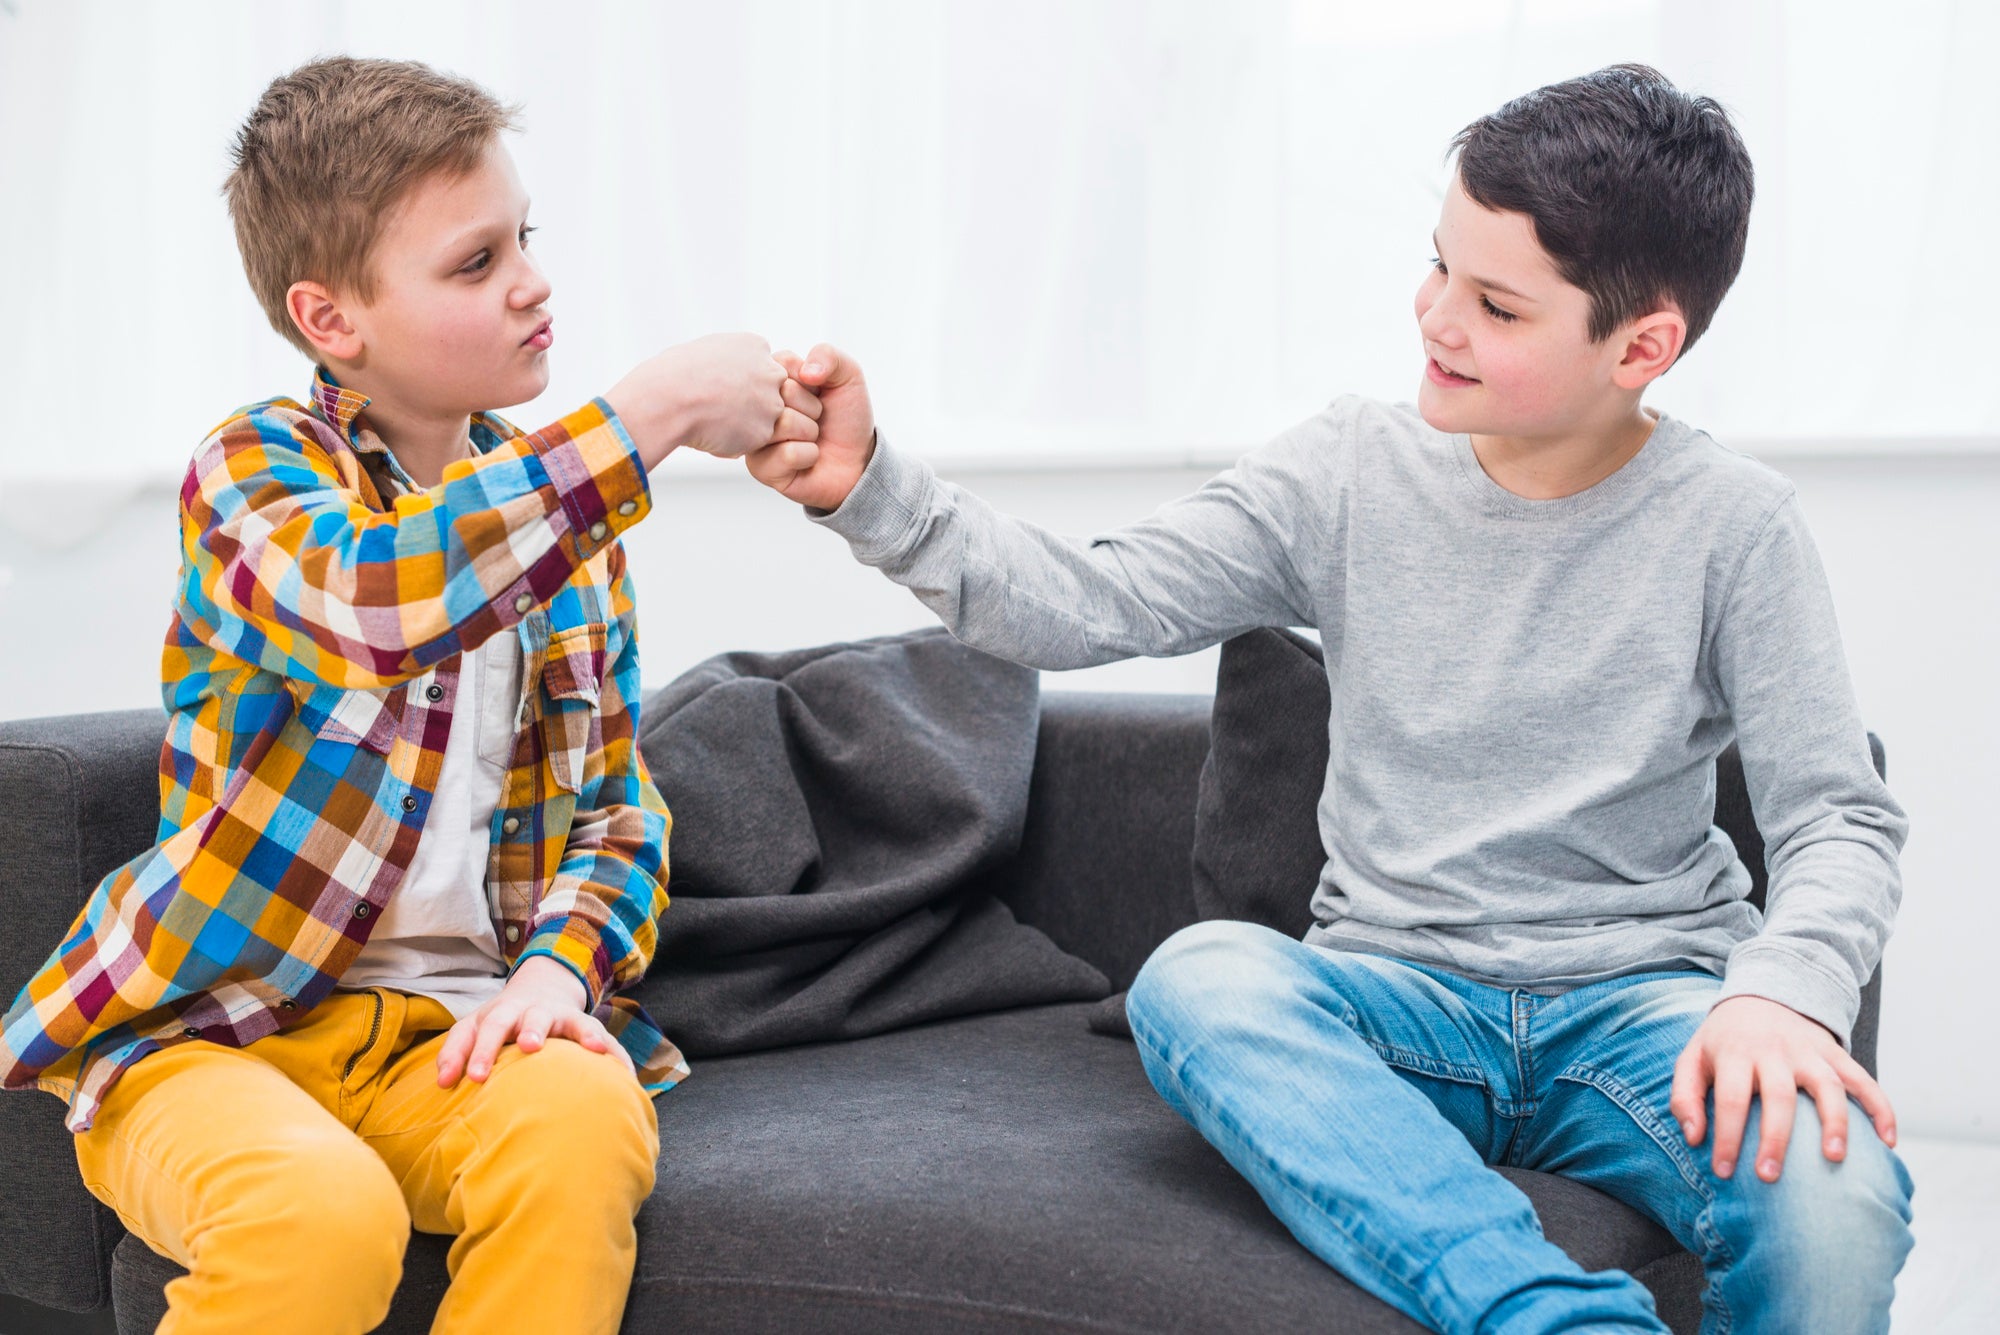 How do parents advise handling teenage peer pressure?